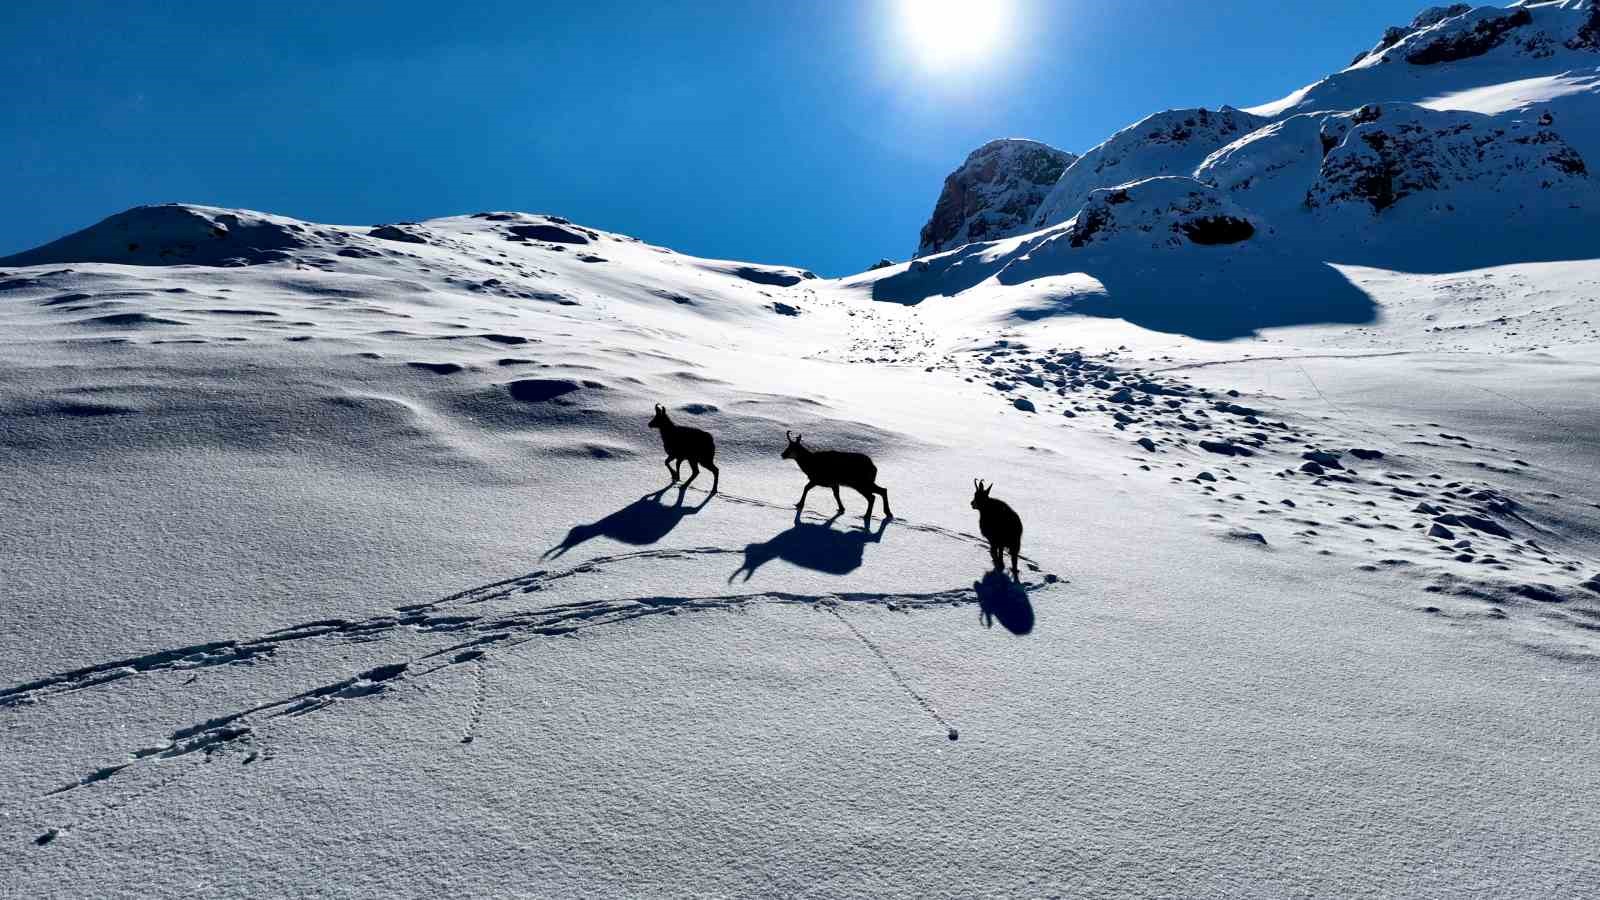 karlı dağları aşarak göç yoluna koyulan yaban keçileri belgesel tadında görüntü oluşturdu